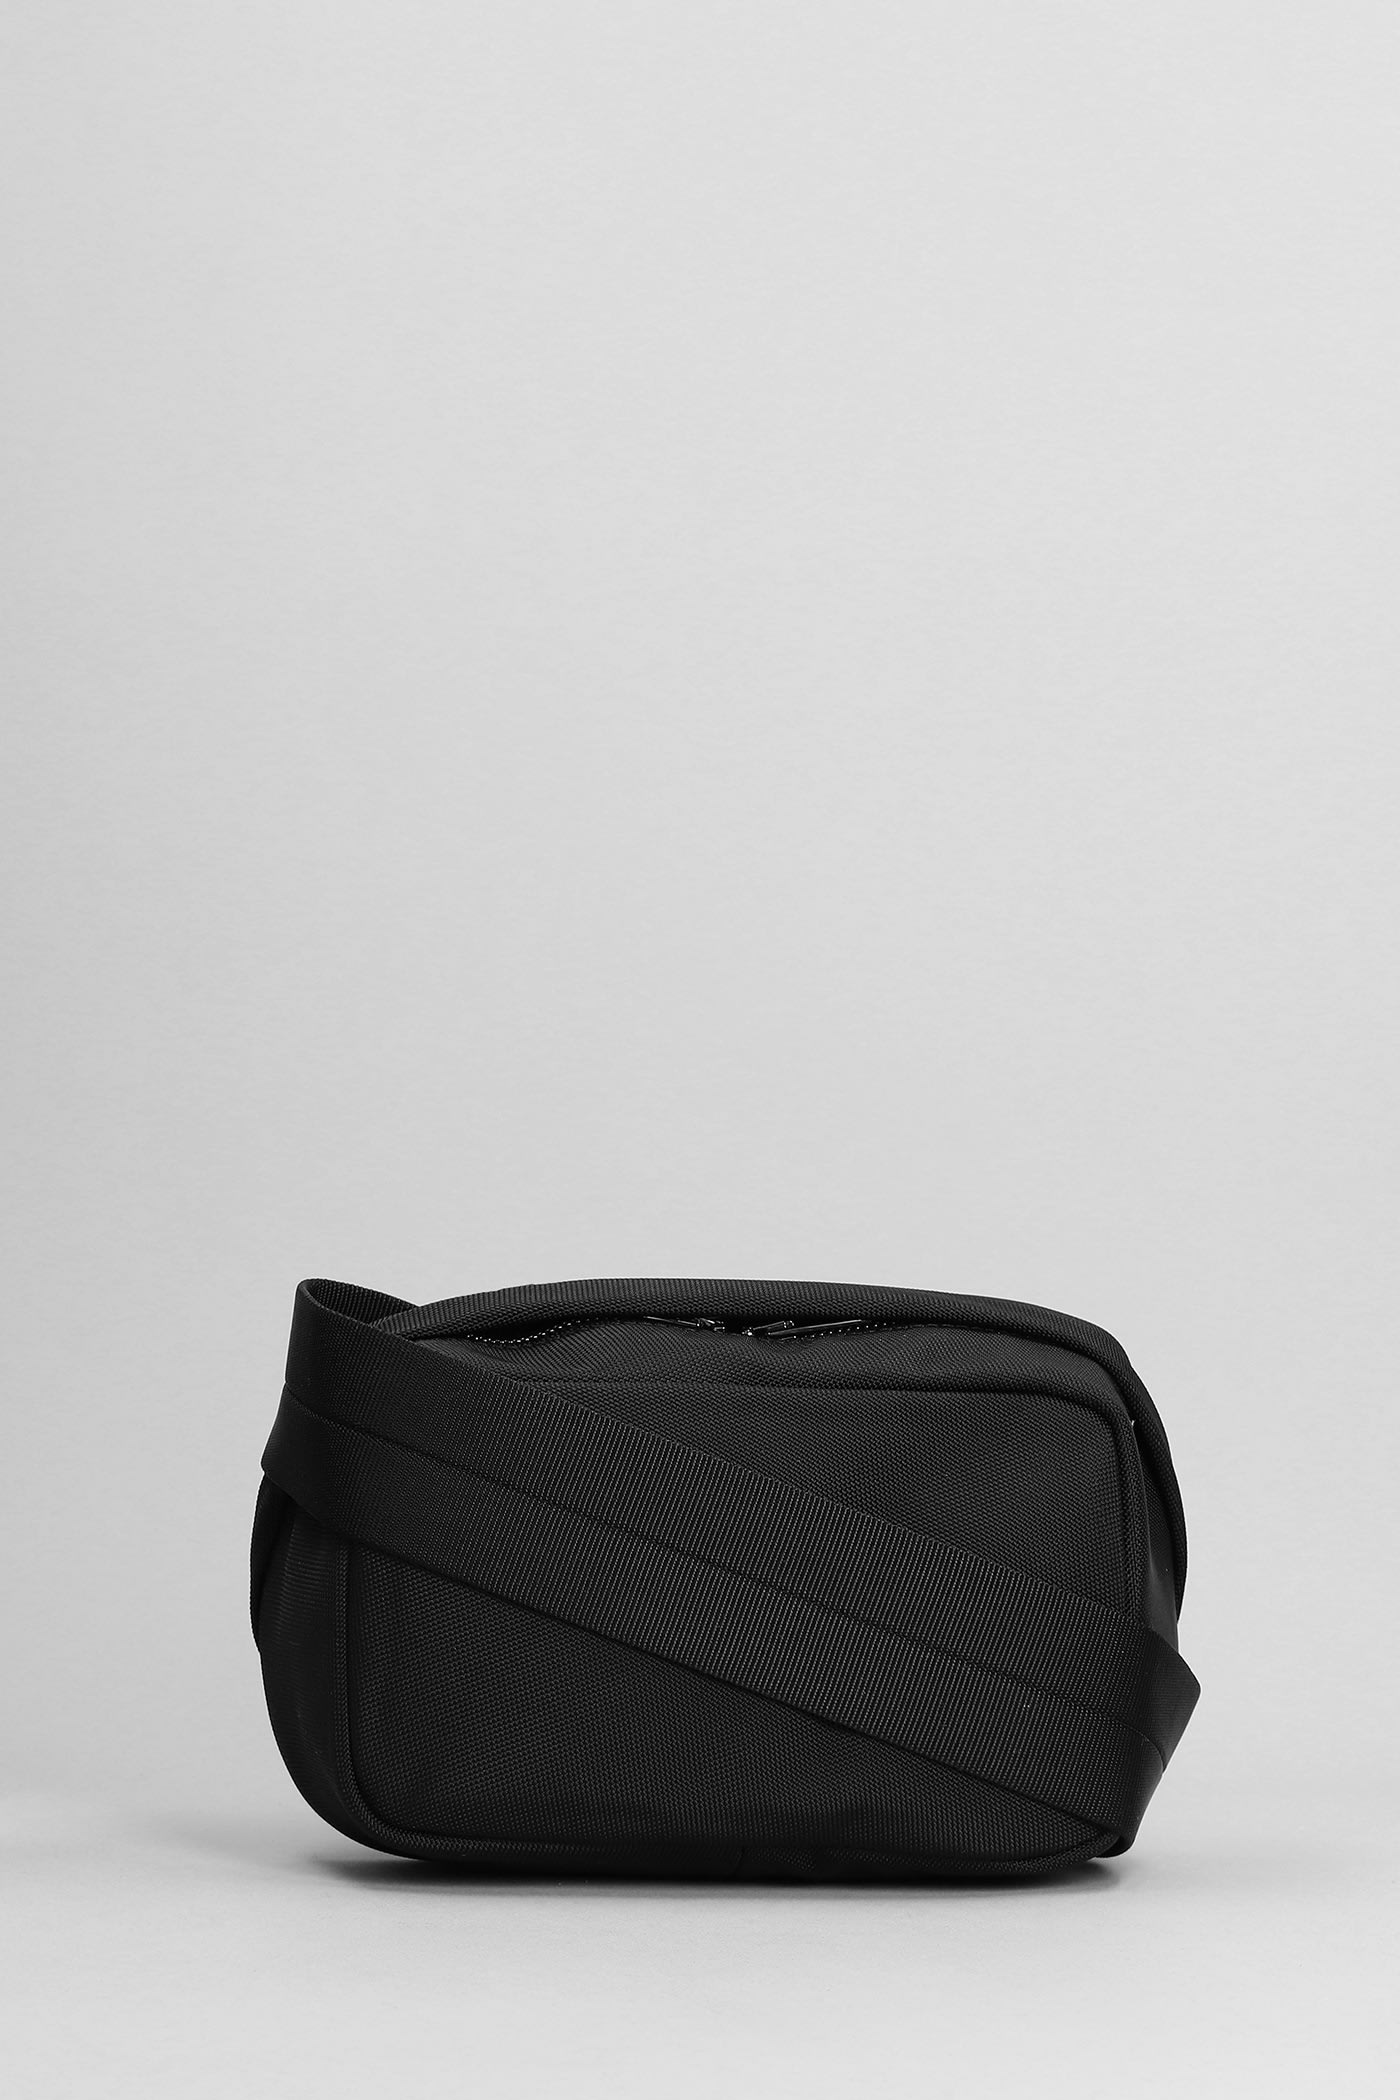 Heiress Sport Shoulder Bag In Black Nylon